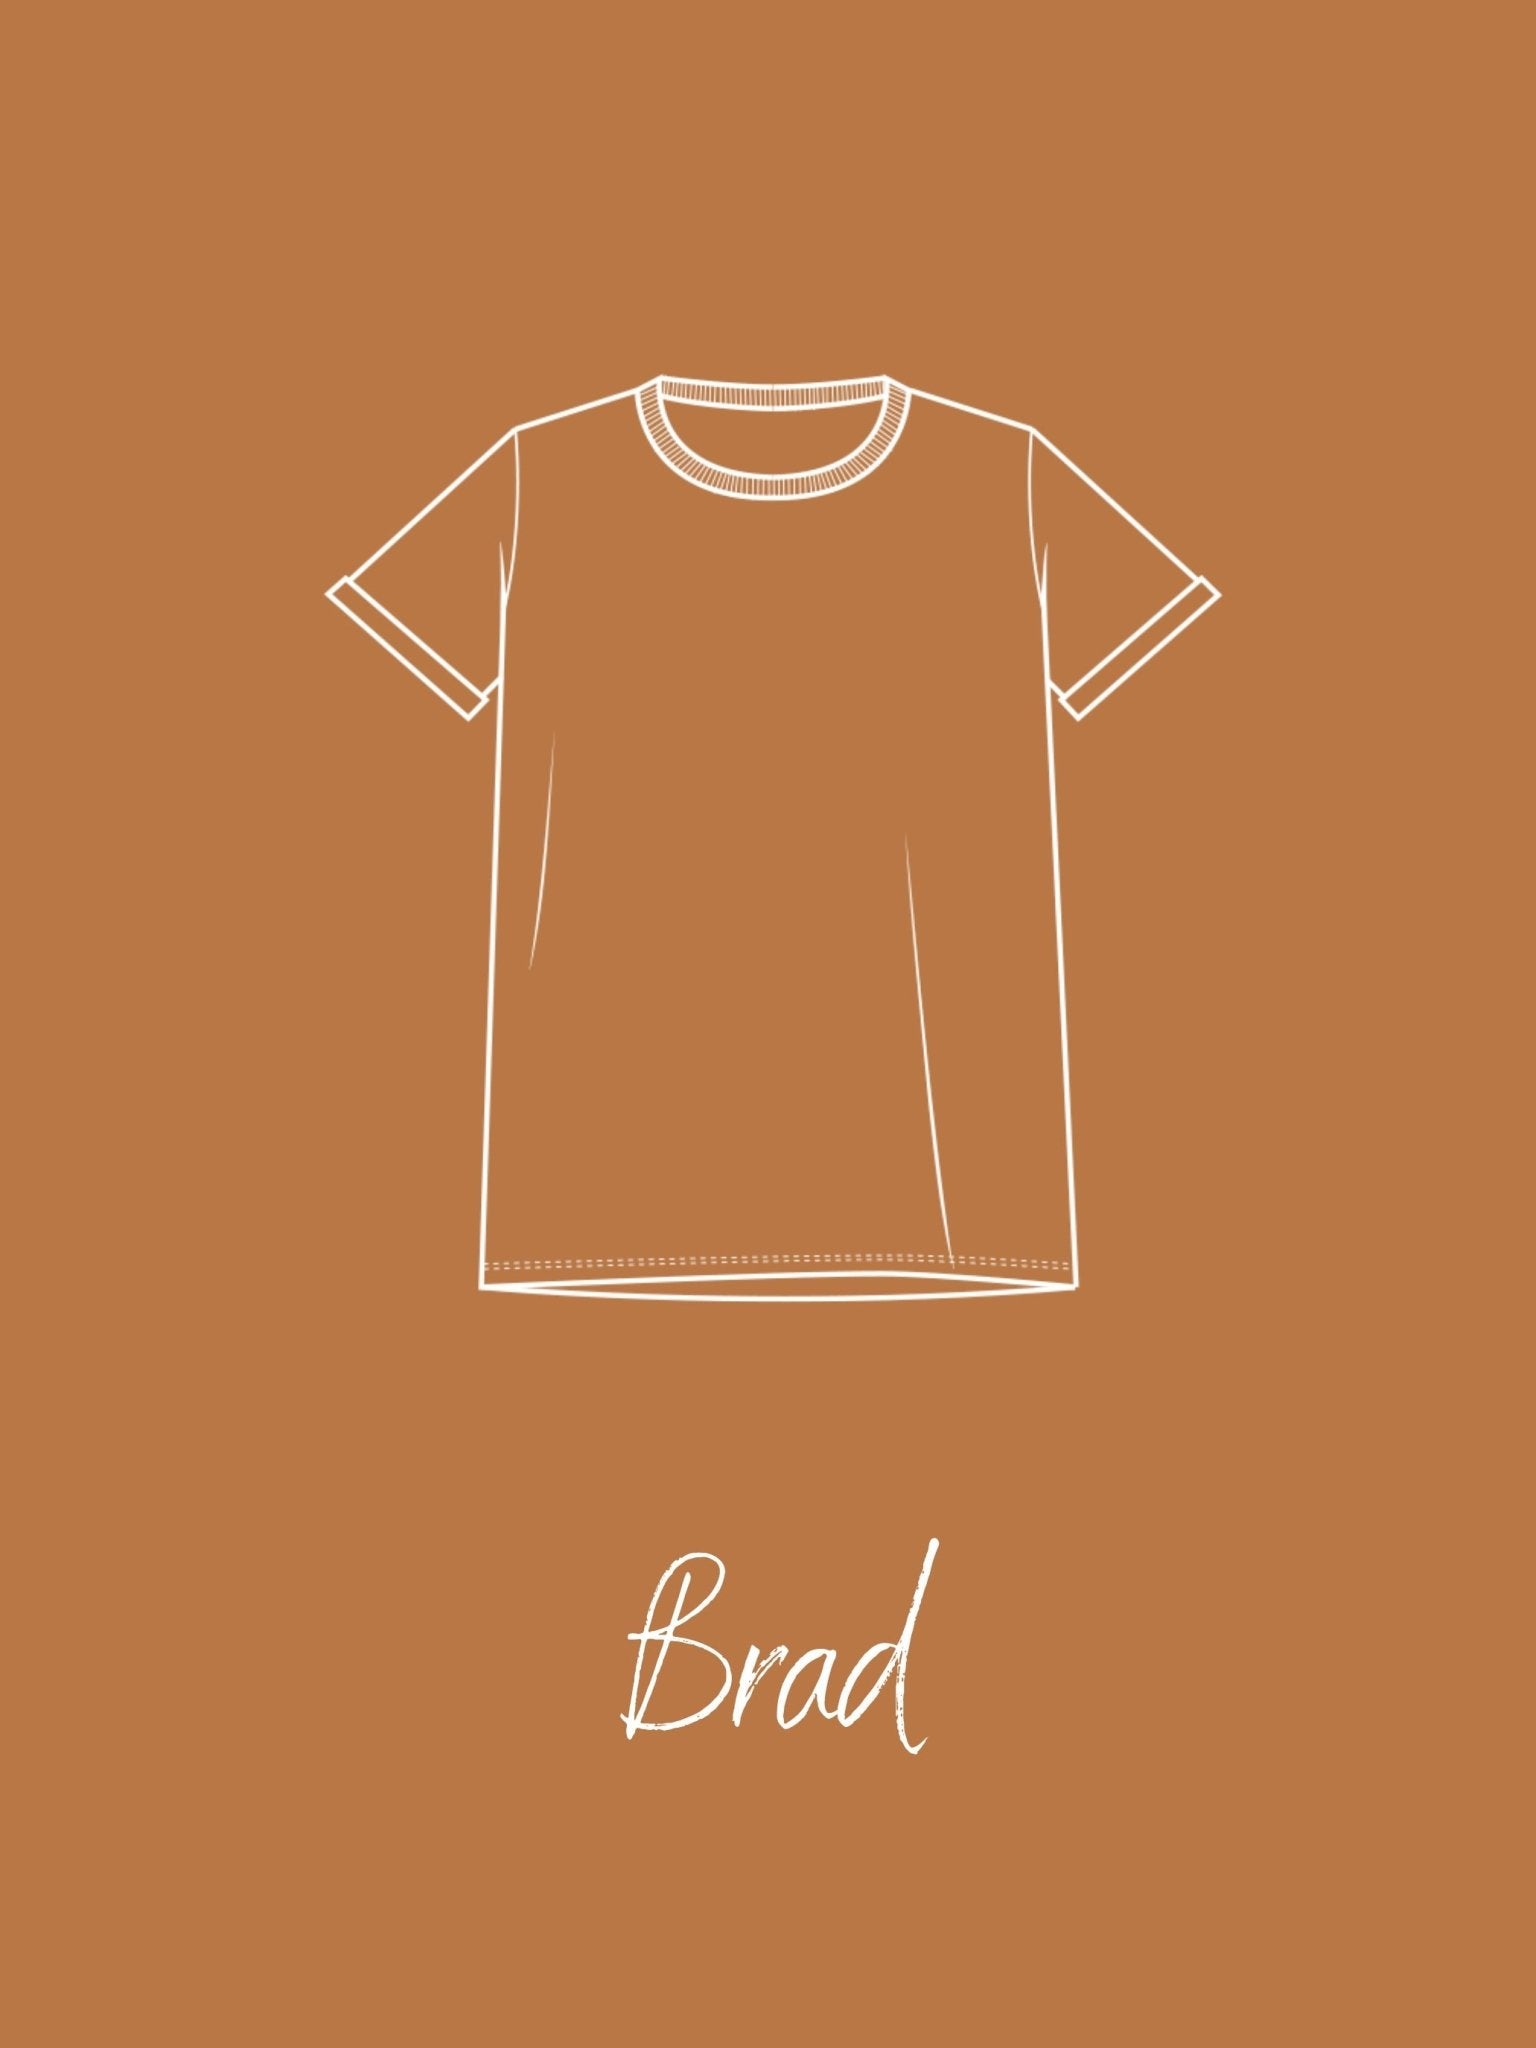 Joli Kit Couture - T-shirt Brad adulte caramel - Joli Lab